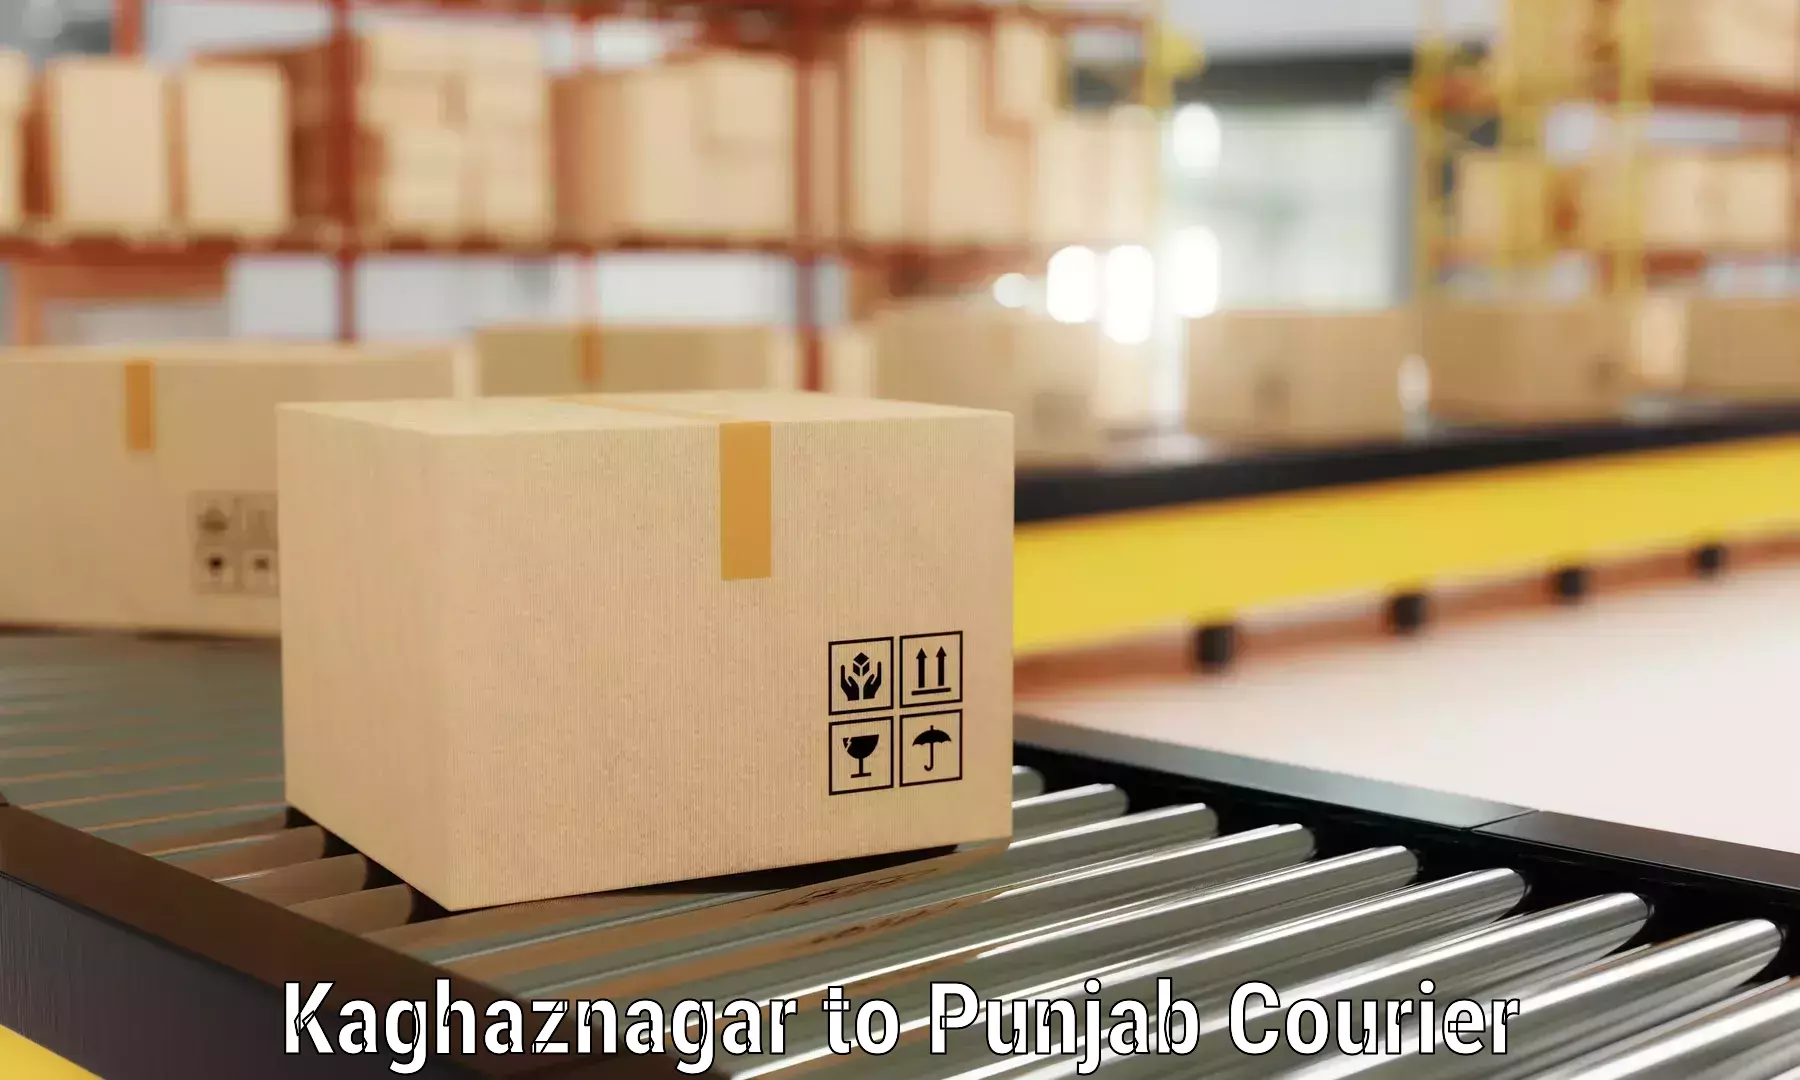 Furniture transport experts Kaghaznagar to Ropar